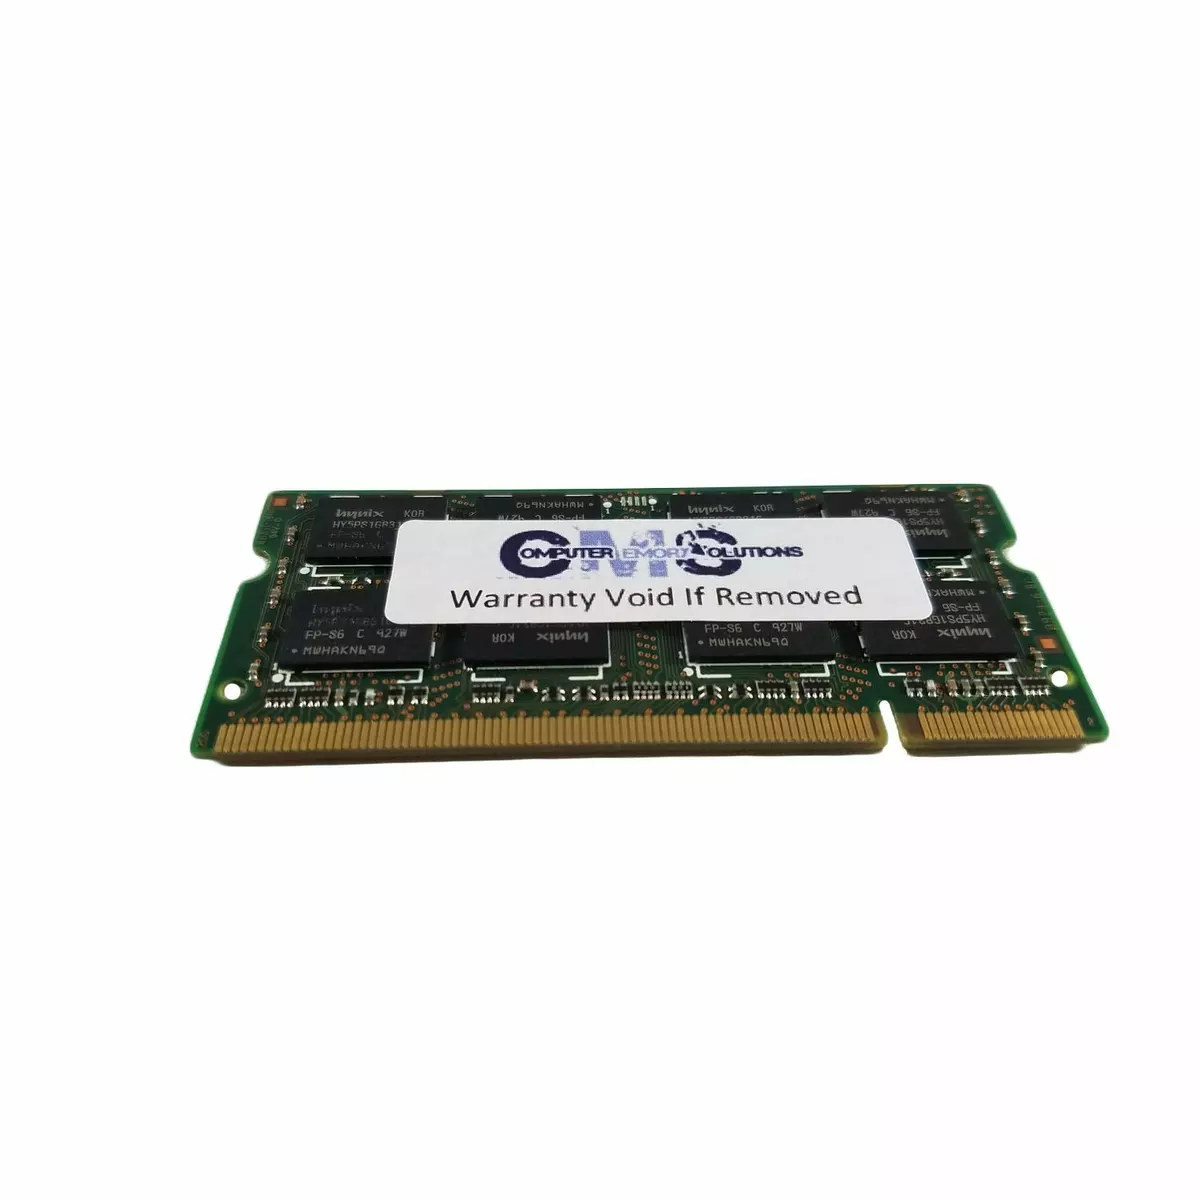 Sved Poesi Grine 2GB (1x2GB) MEMORY RAM 4 IBM Lenovo ThinkPad T60, T60p series A38 | eBay